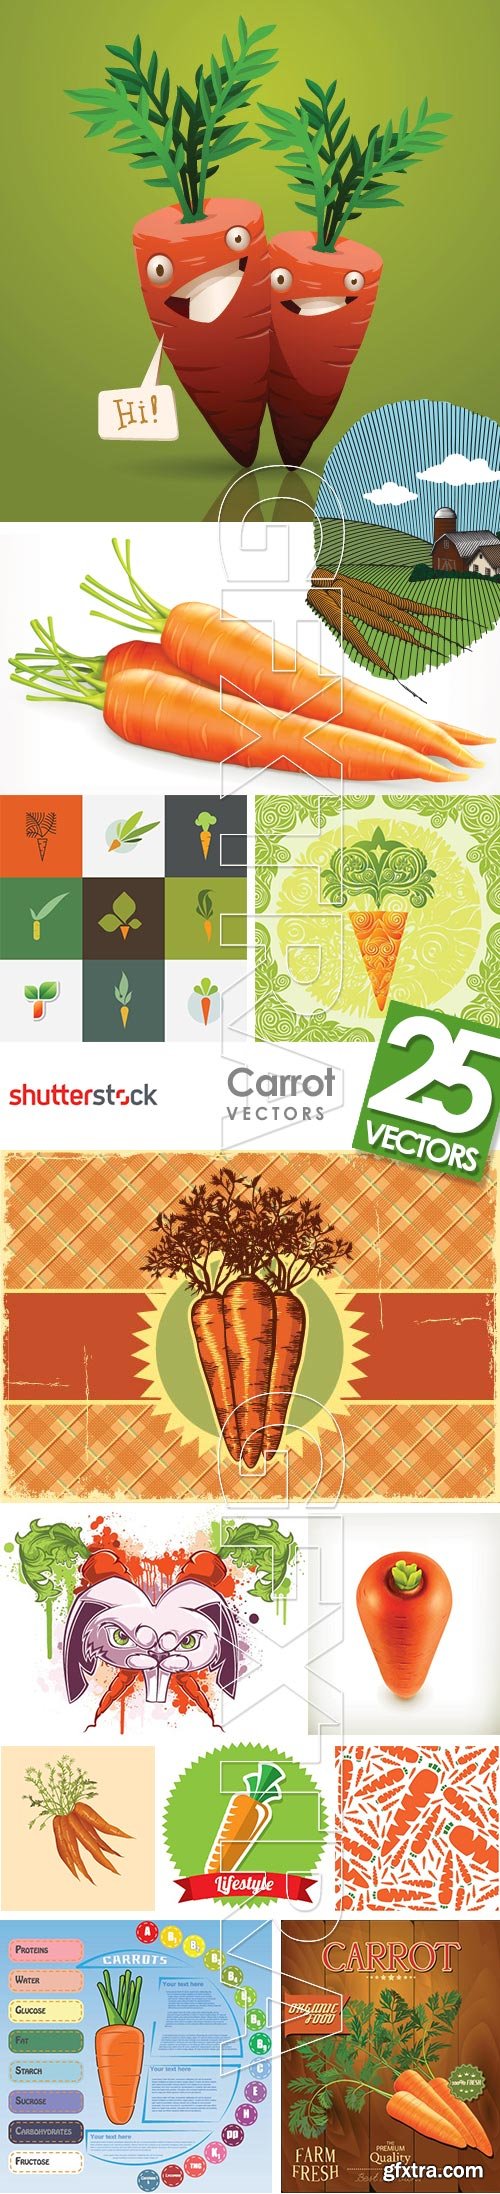 Carrot Vectors 25xEPS